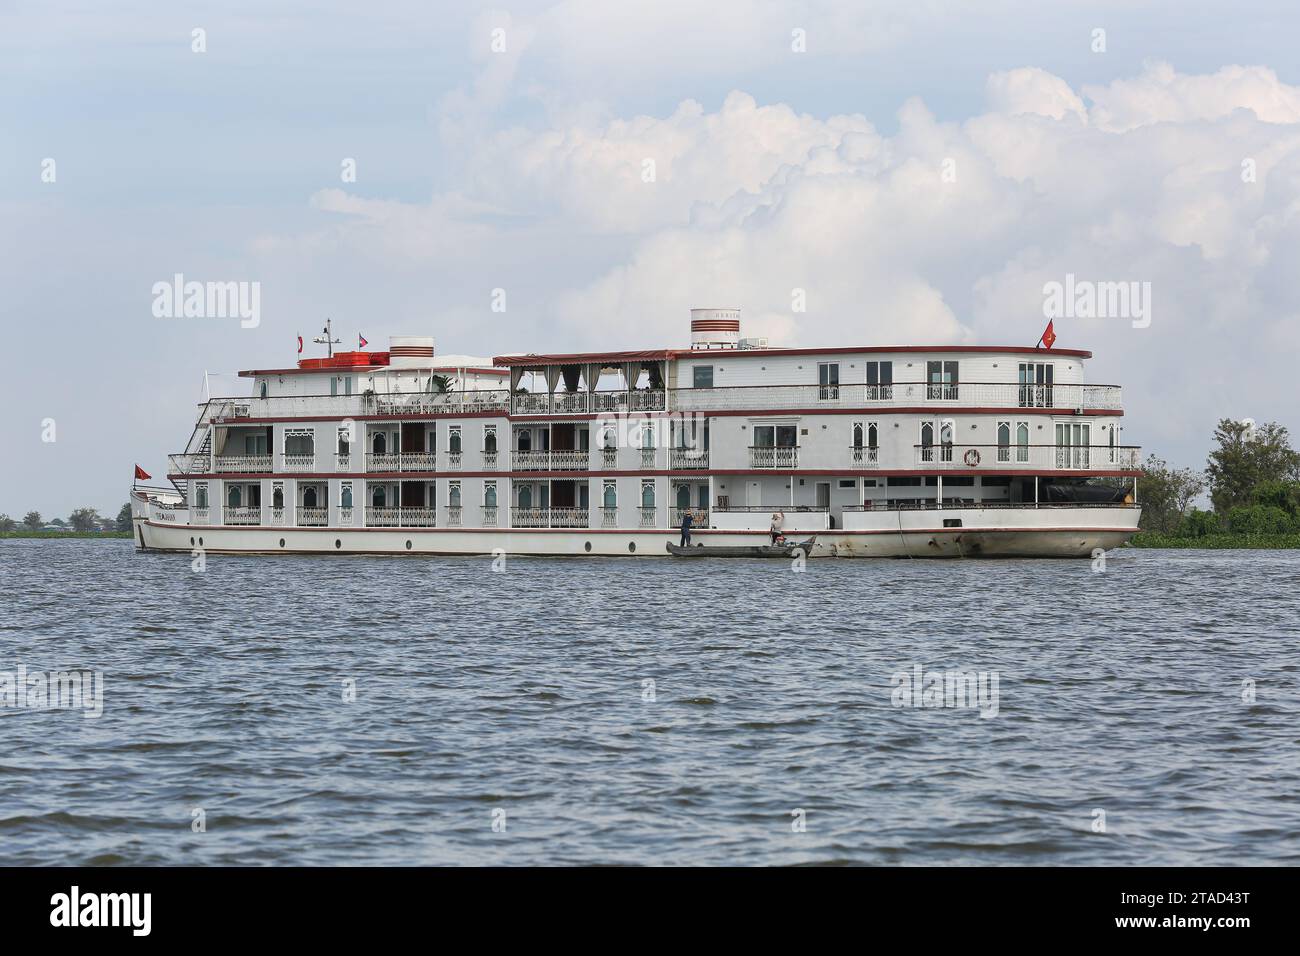 Das luxuriöse Kreuzfahrtschiff Jahan (Heritage Line), Bootsfahrten auf dem unteren Mekong, Kambodscha (Siem Reap - Tonle SAP See) und Vietnam (Saigon - Ho Chi Minh) Stockfoto